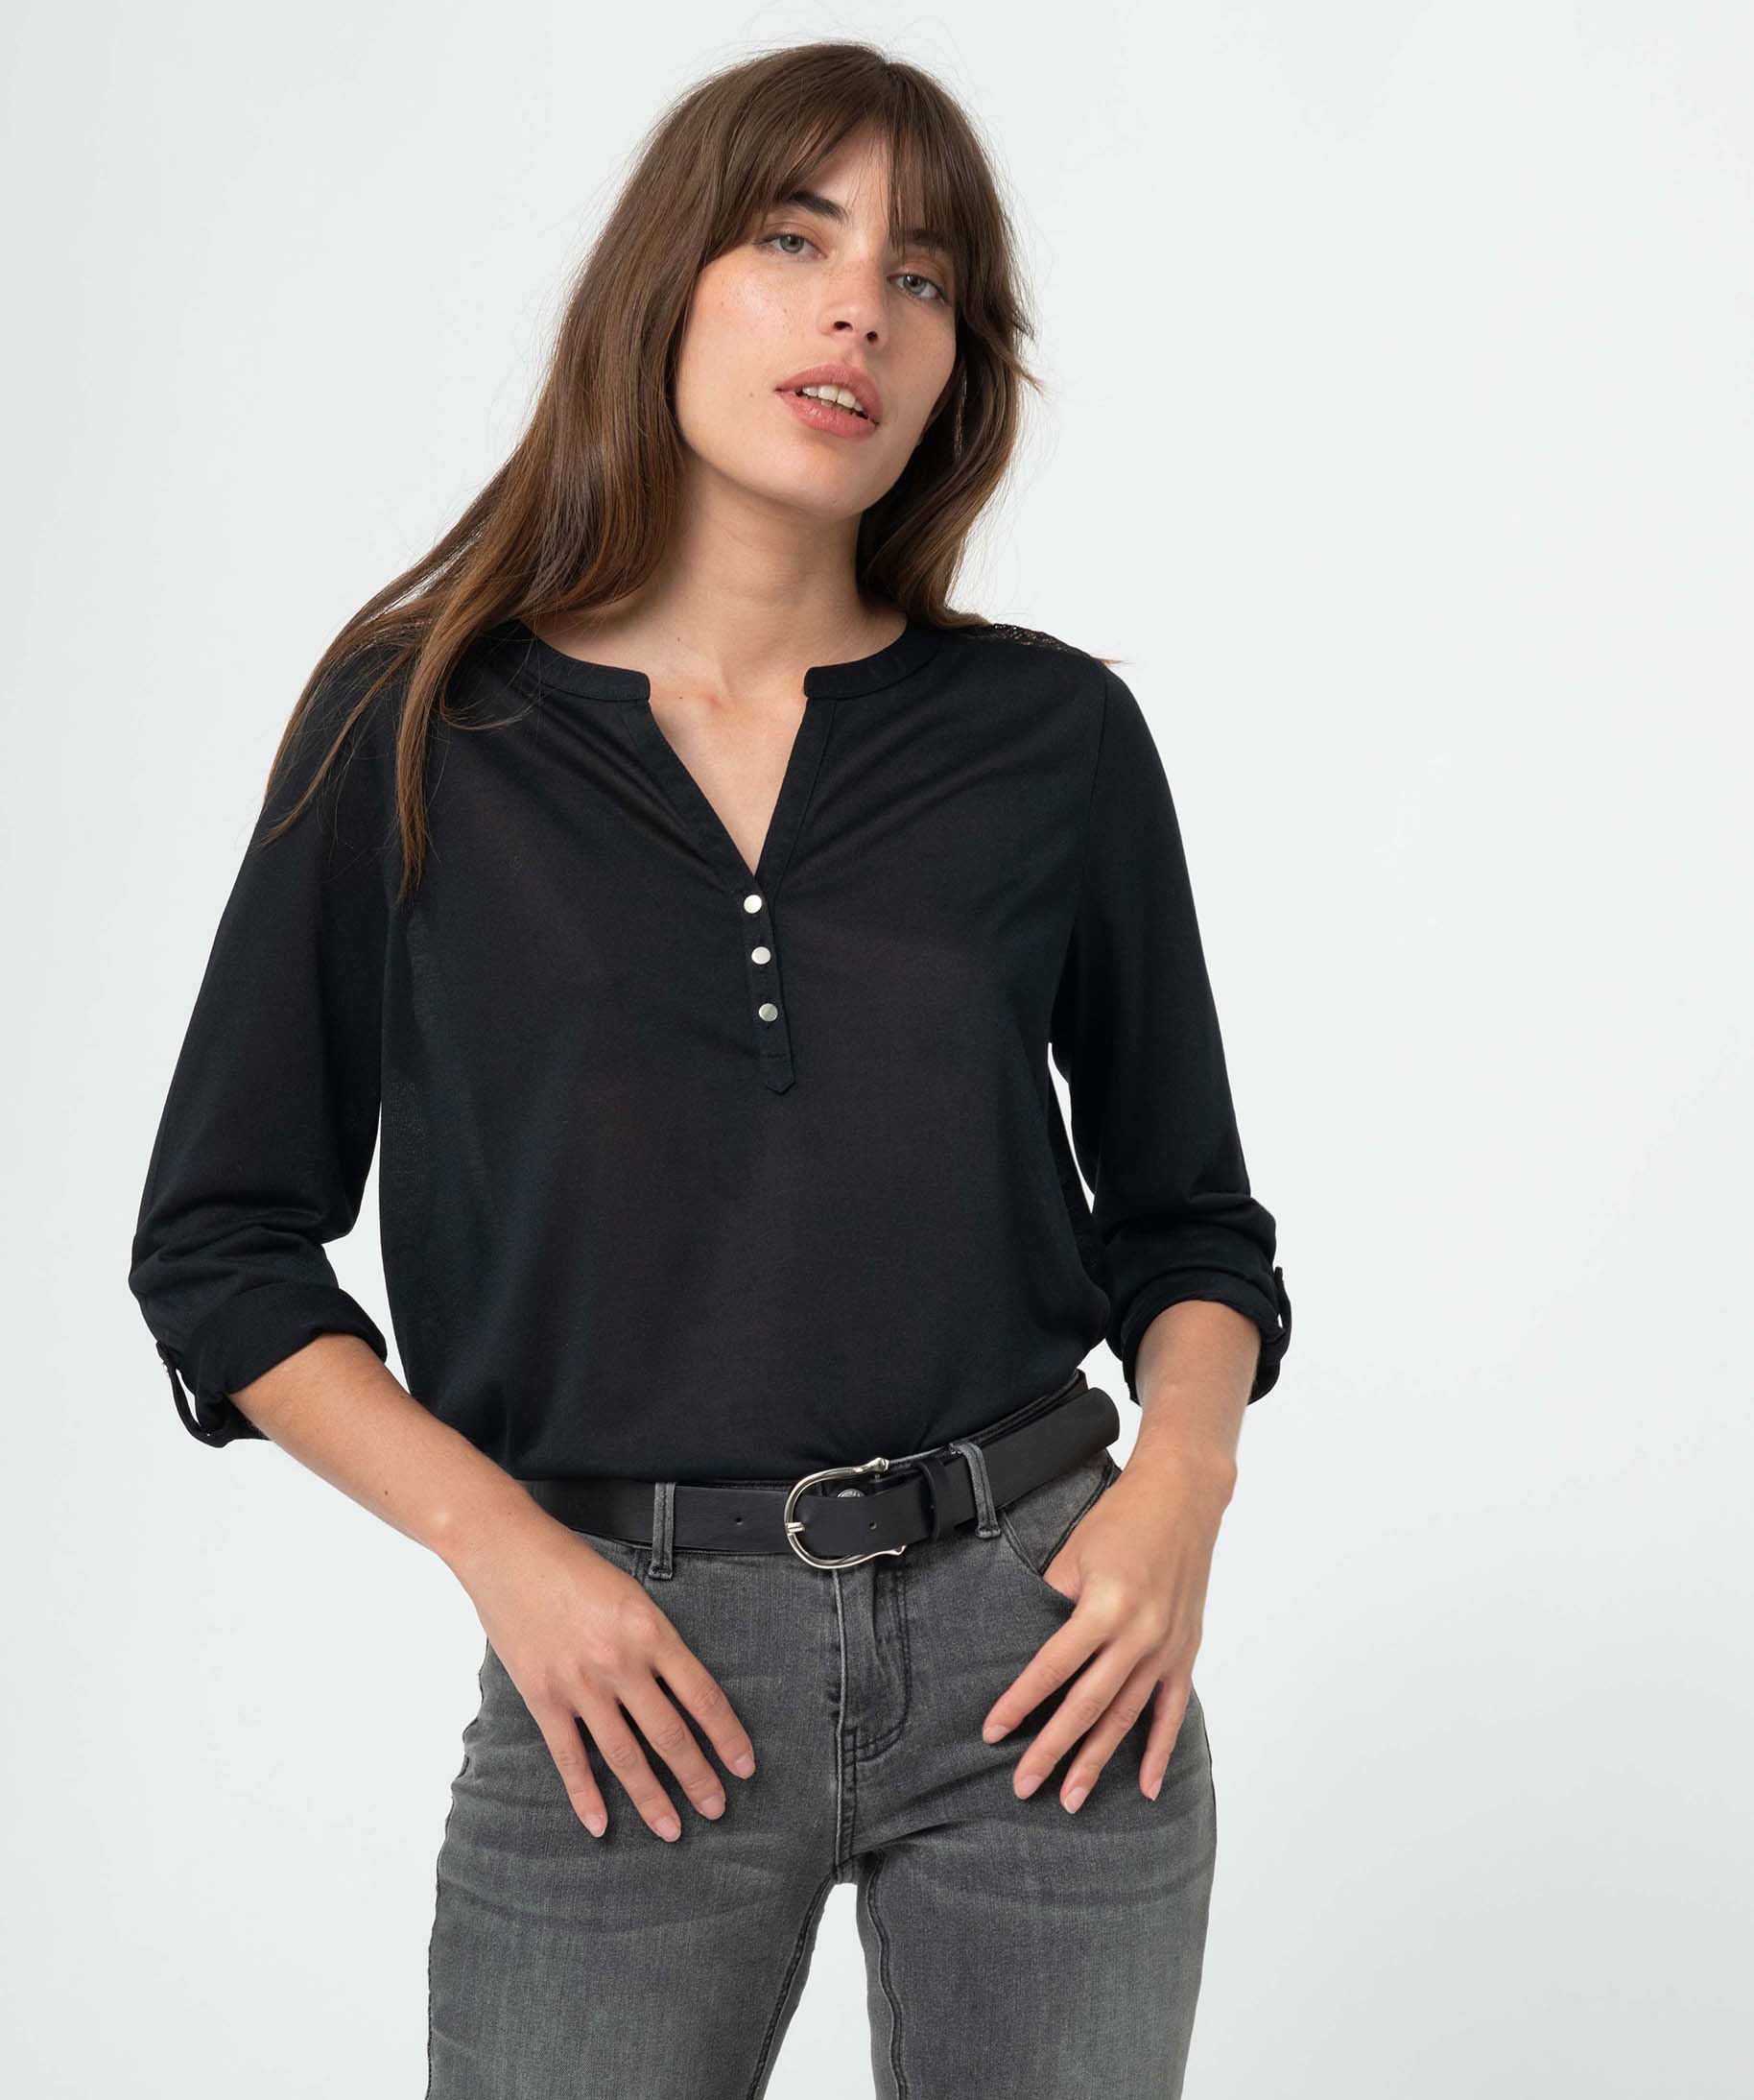 tee-shirt femme a manches longues et dos dentelle noir t-shirts manches longues